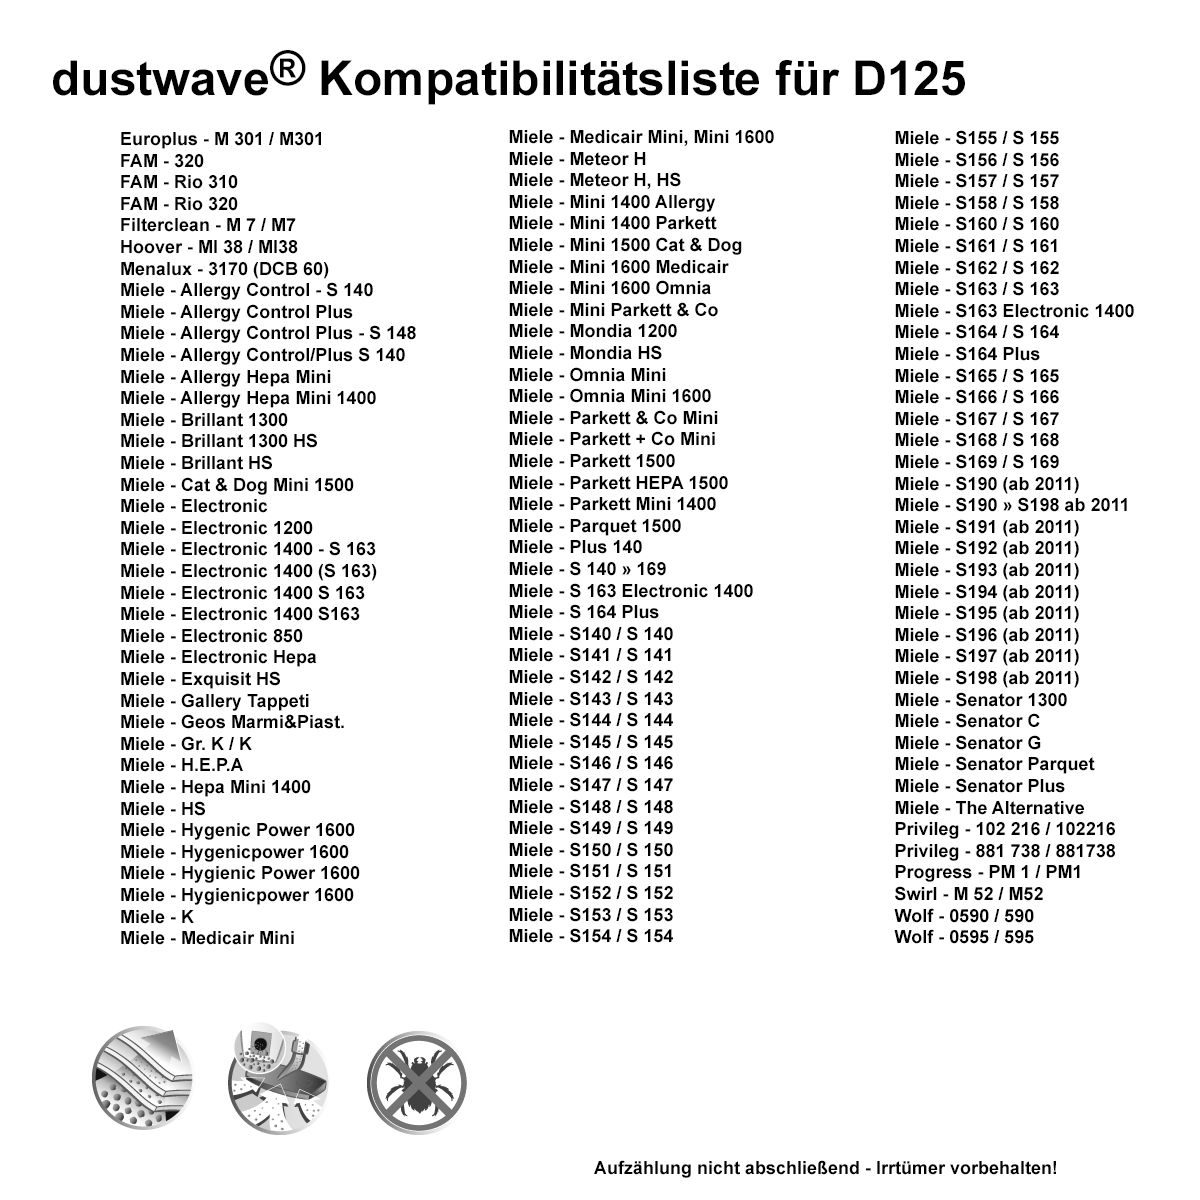 Dustwave® 5 Staubsaugerbeutel für Miele Meteor H, HS - hocheffizient, mehrlagiges Mikrovlies mit Hygieneverschluss - Made in Germany